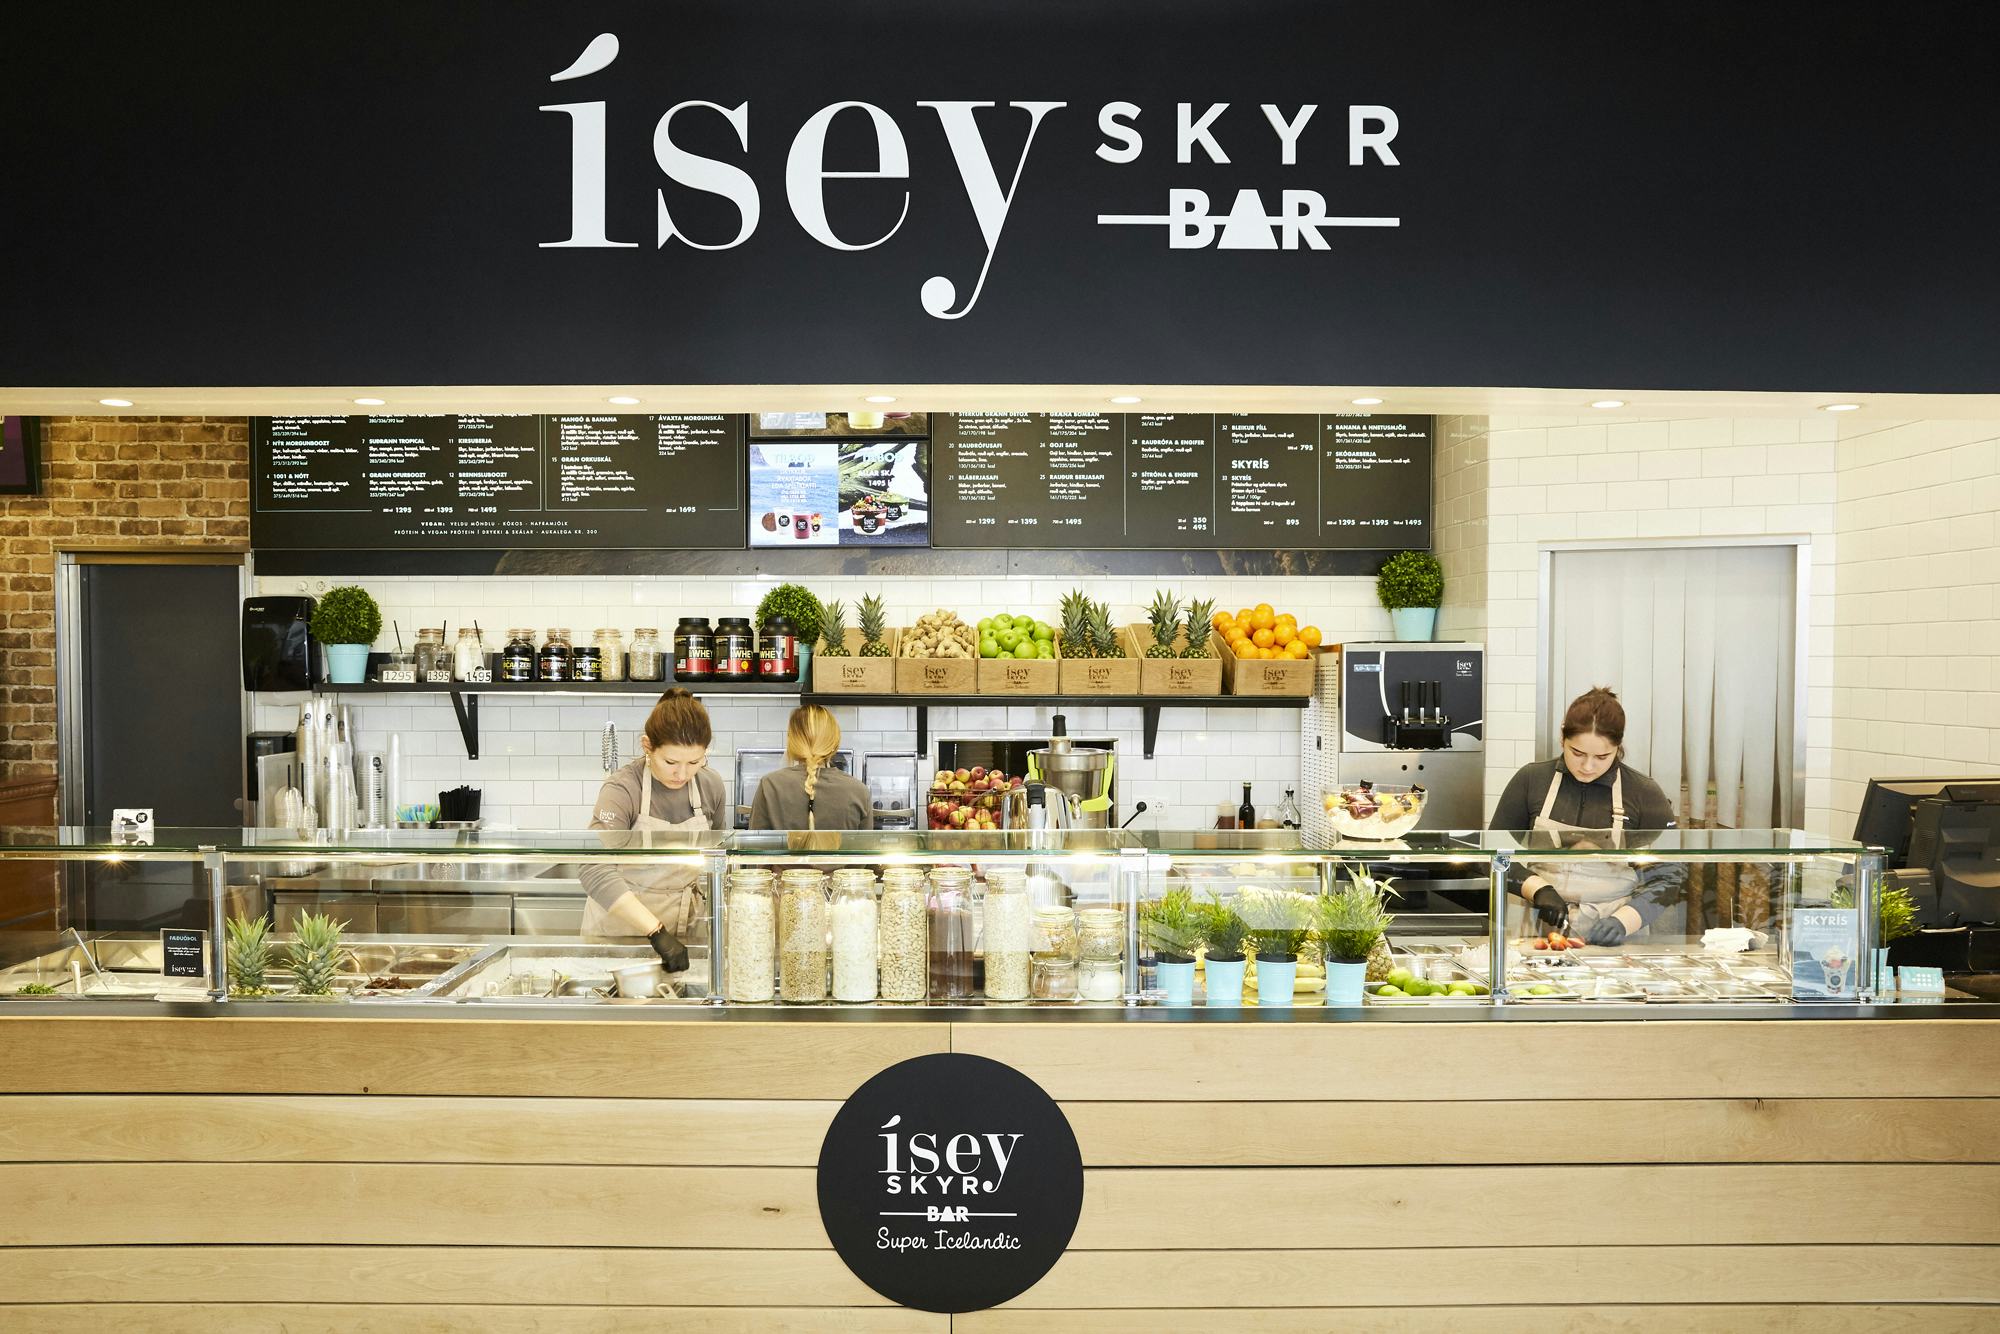 Ísey Skyr Bar wil als franchiseformule naar Nederland